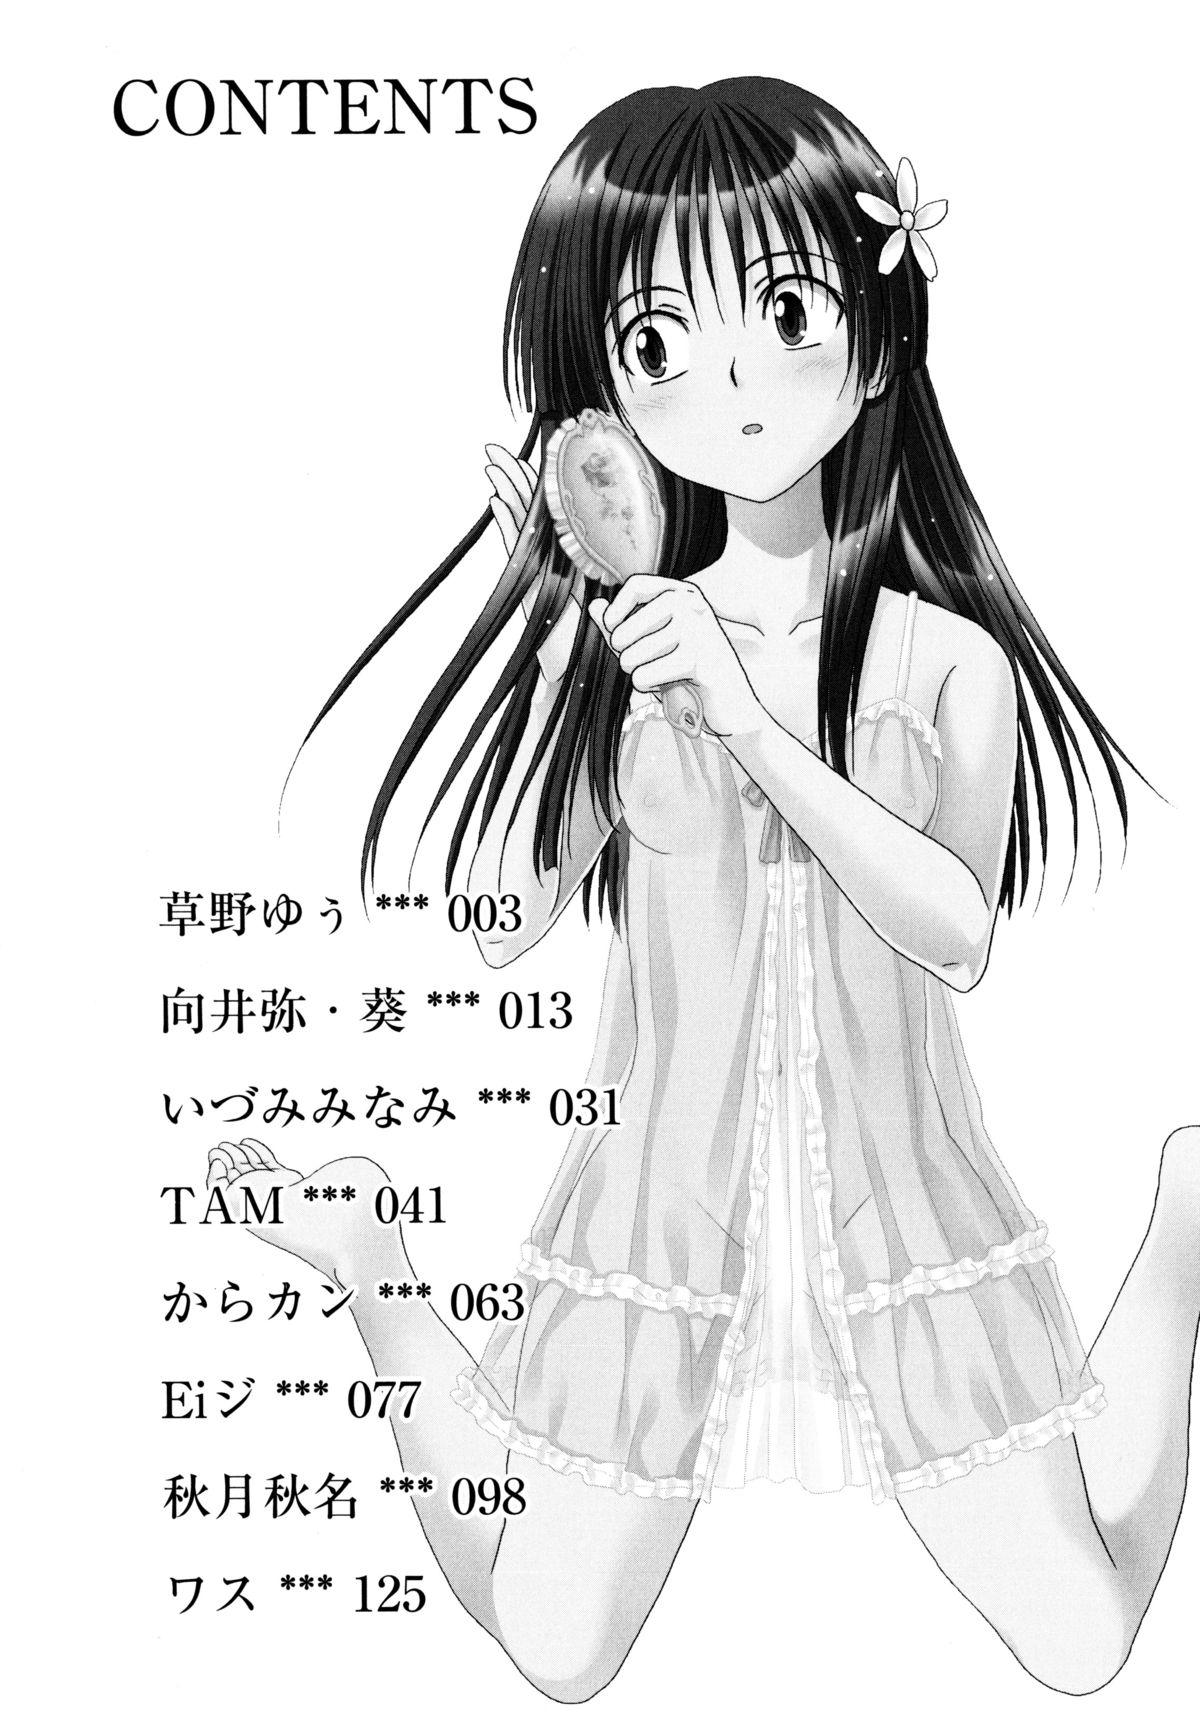 8teen Toaru Yuri no Love Syrup - Toaru kagaku no railgun Hood - Page 4